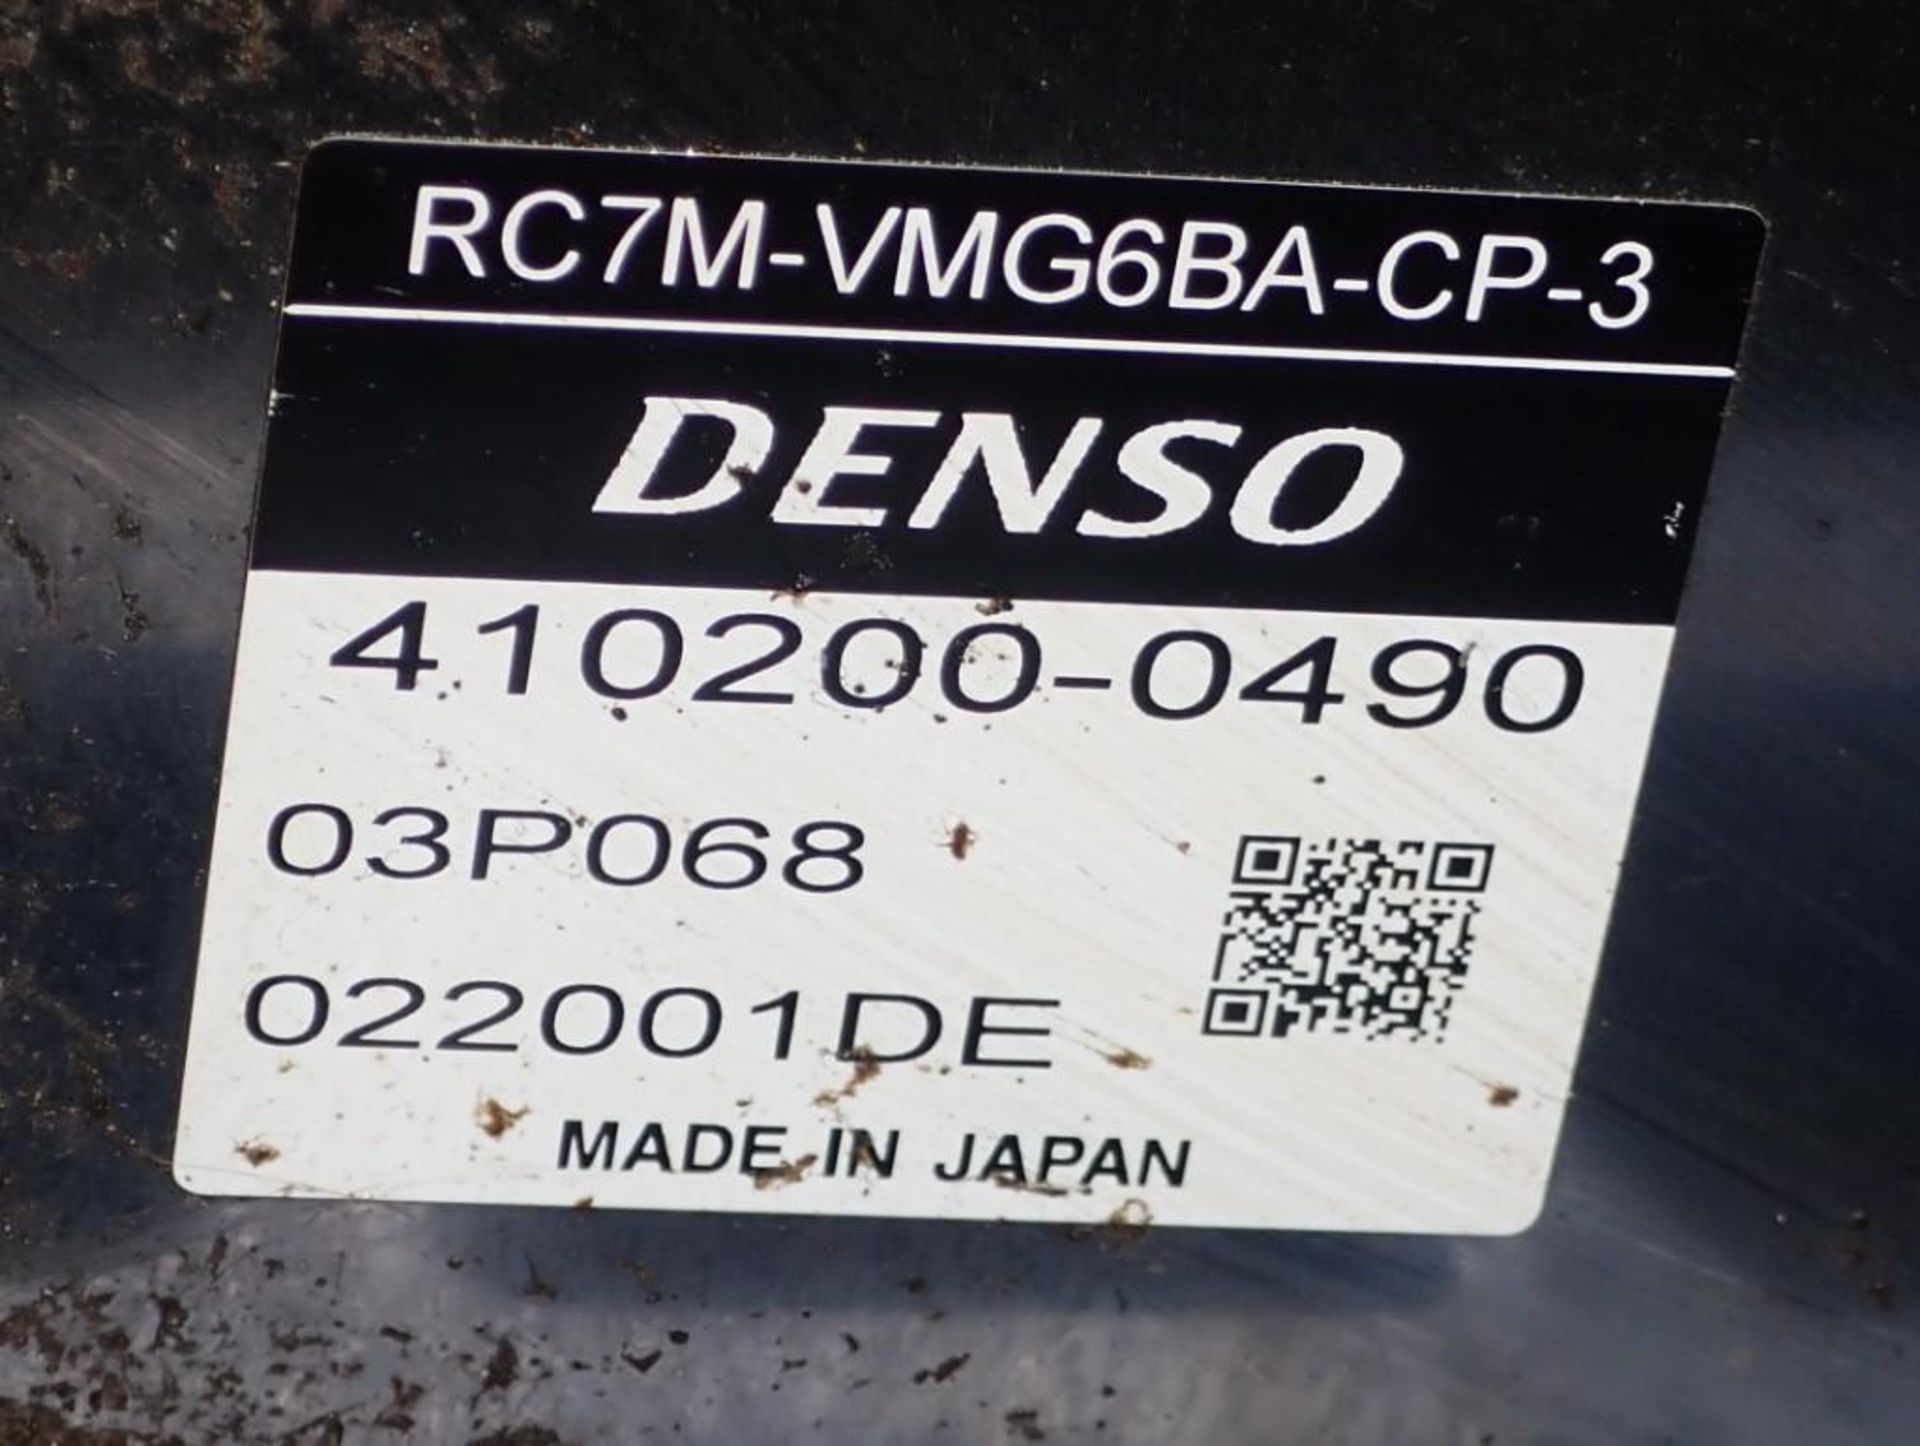 Denso #VM-6083D/GM-VW Robot w/ RC7M-VMG6BA-CP-3 Control - Image 8 of 9